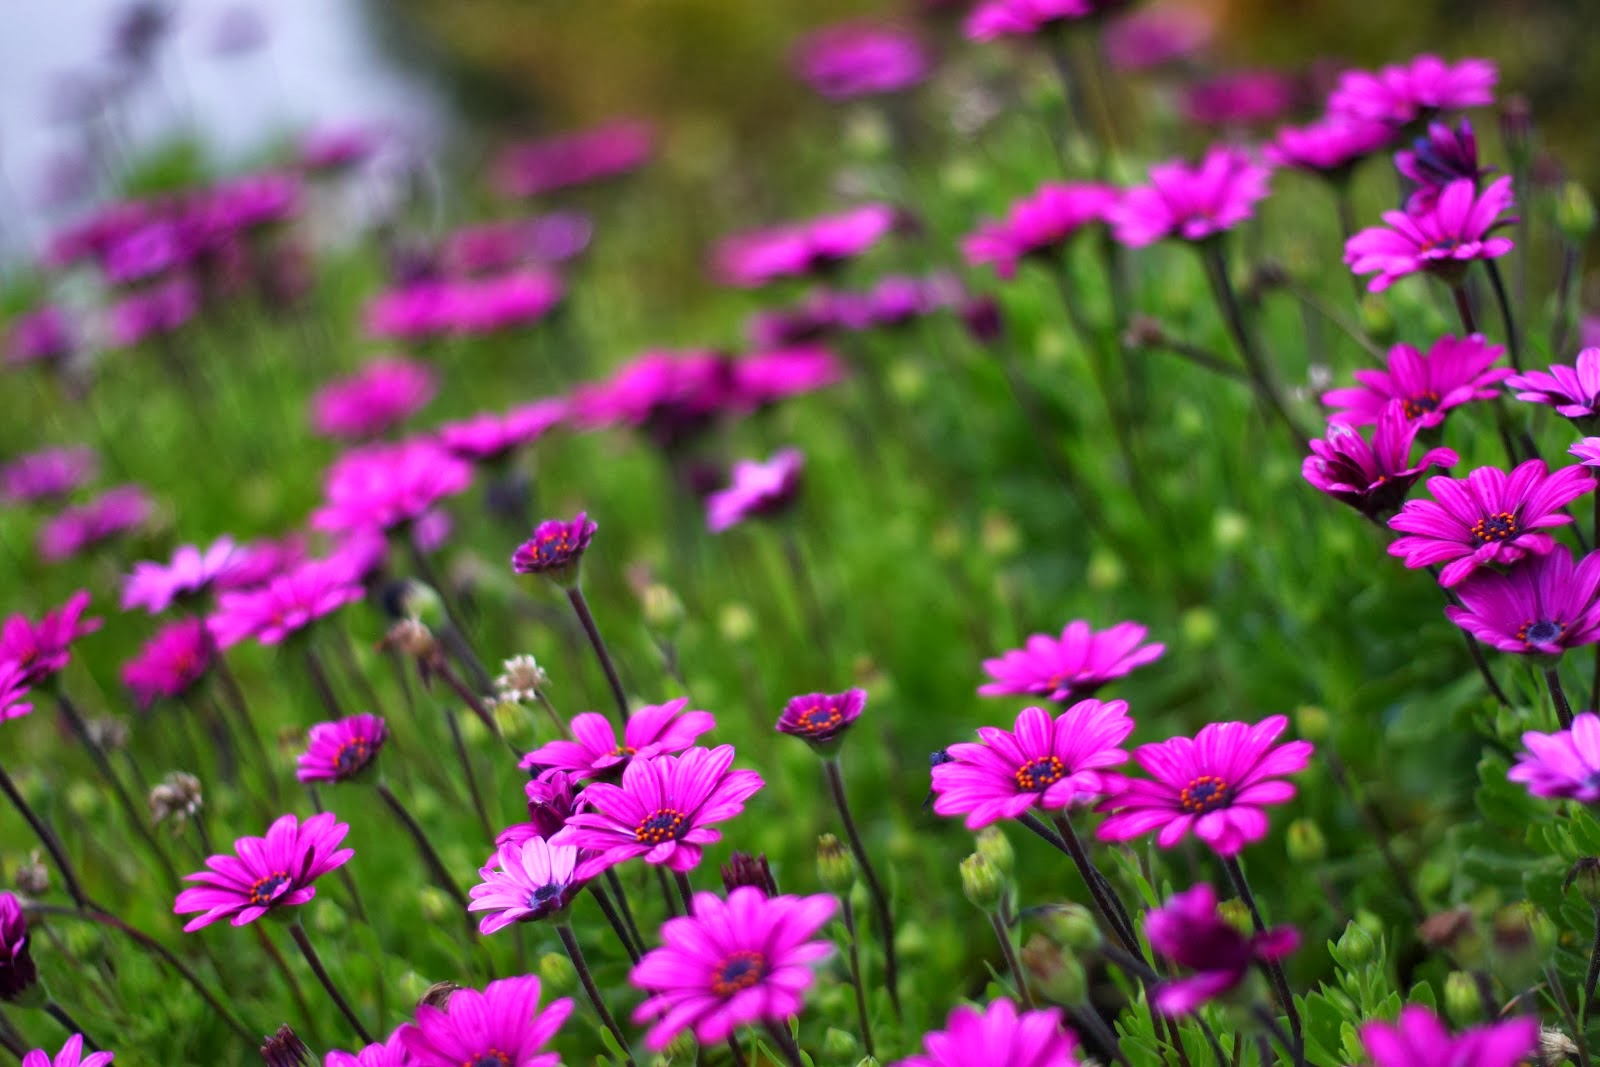 Hoa nhị cánh tím tượng trưng cho sự hiện đại và tinh tế. Với những mảng màu tím tuyệt đẹp, hoa này được yêu thích trong cả trang trí sân vườn và trang trí trong nhà. Những bông hoa này vừa ấm áp, vừa sang trọng đem lại vẻ đẹp và ý nghĩa nhân văn cho mọi người.